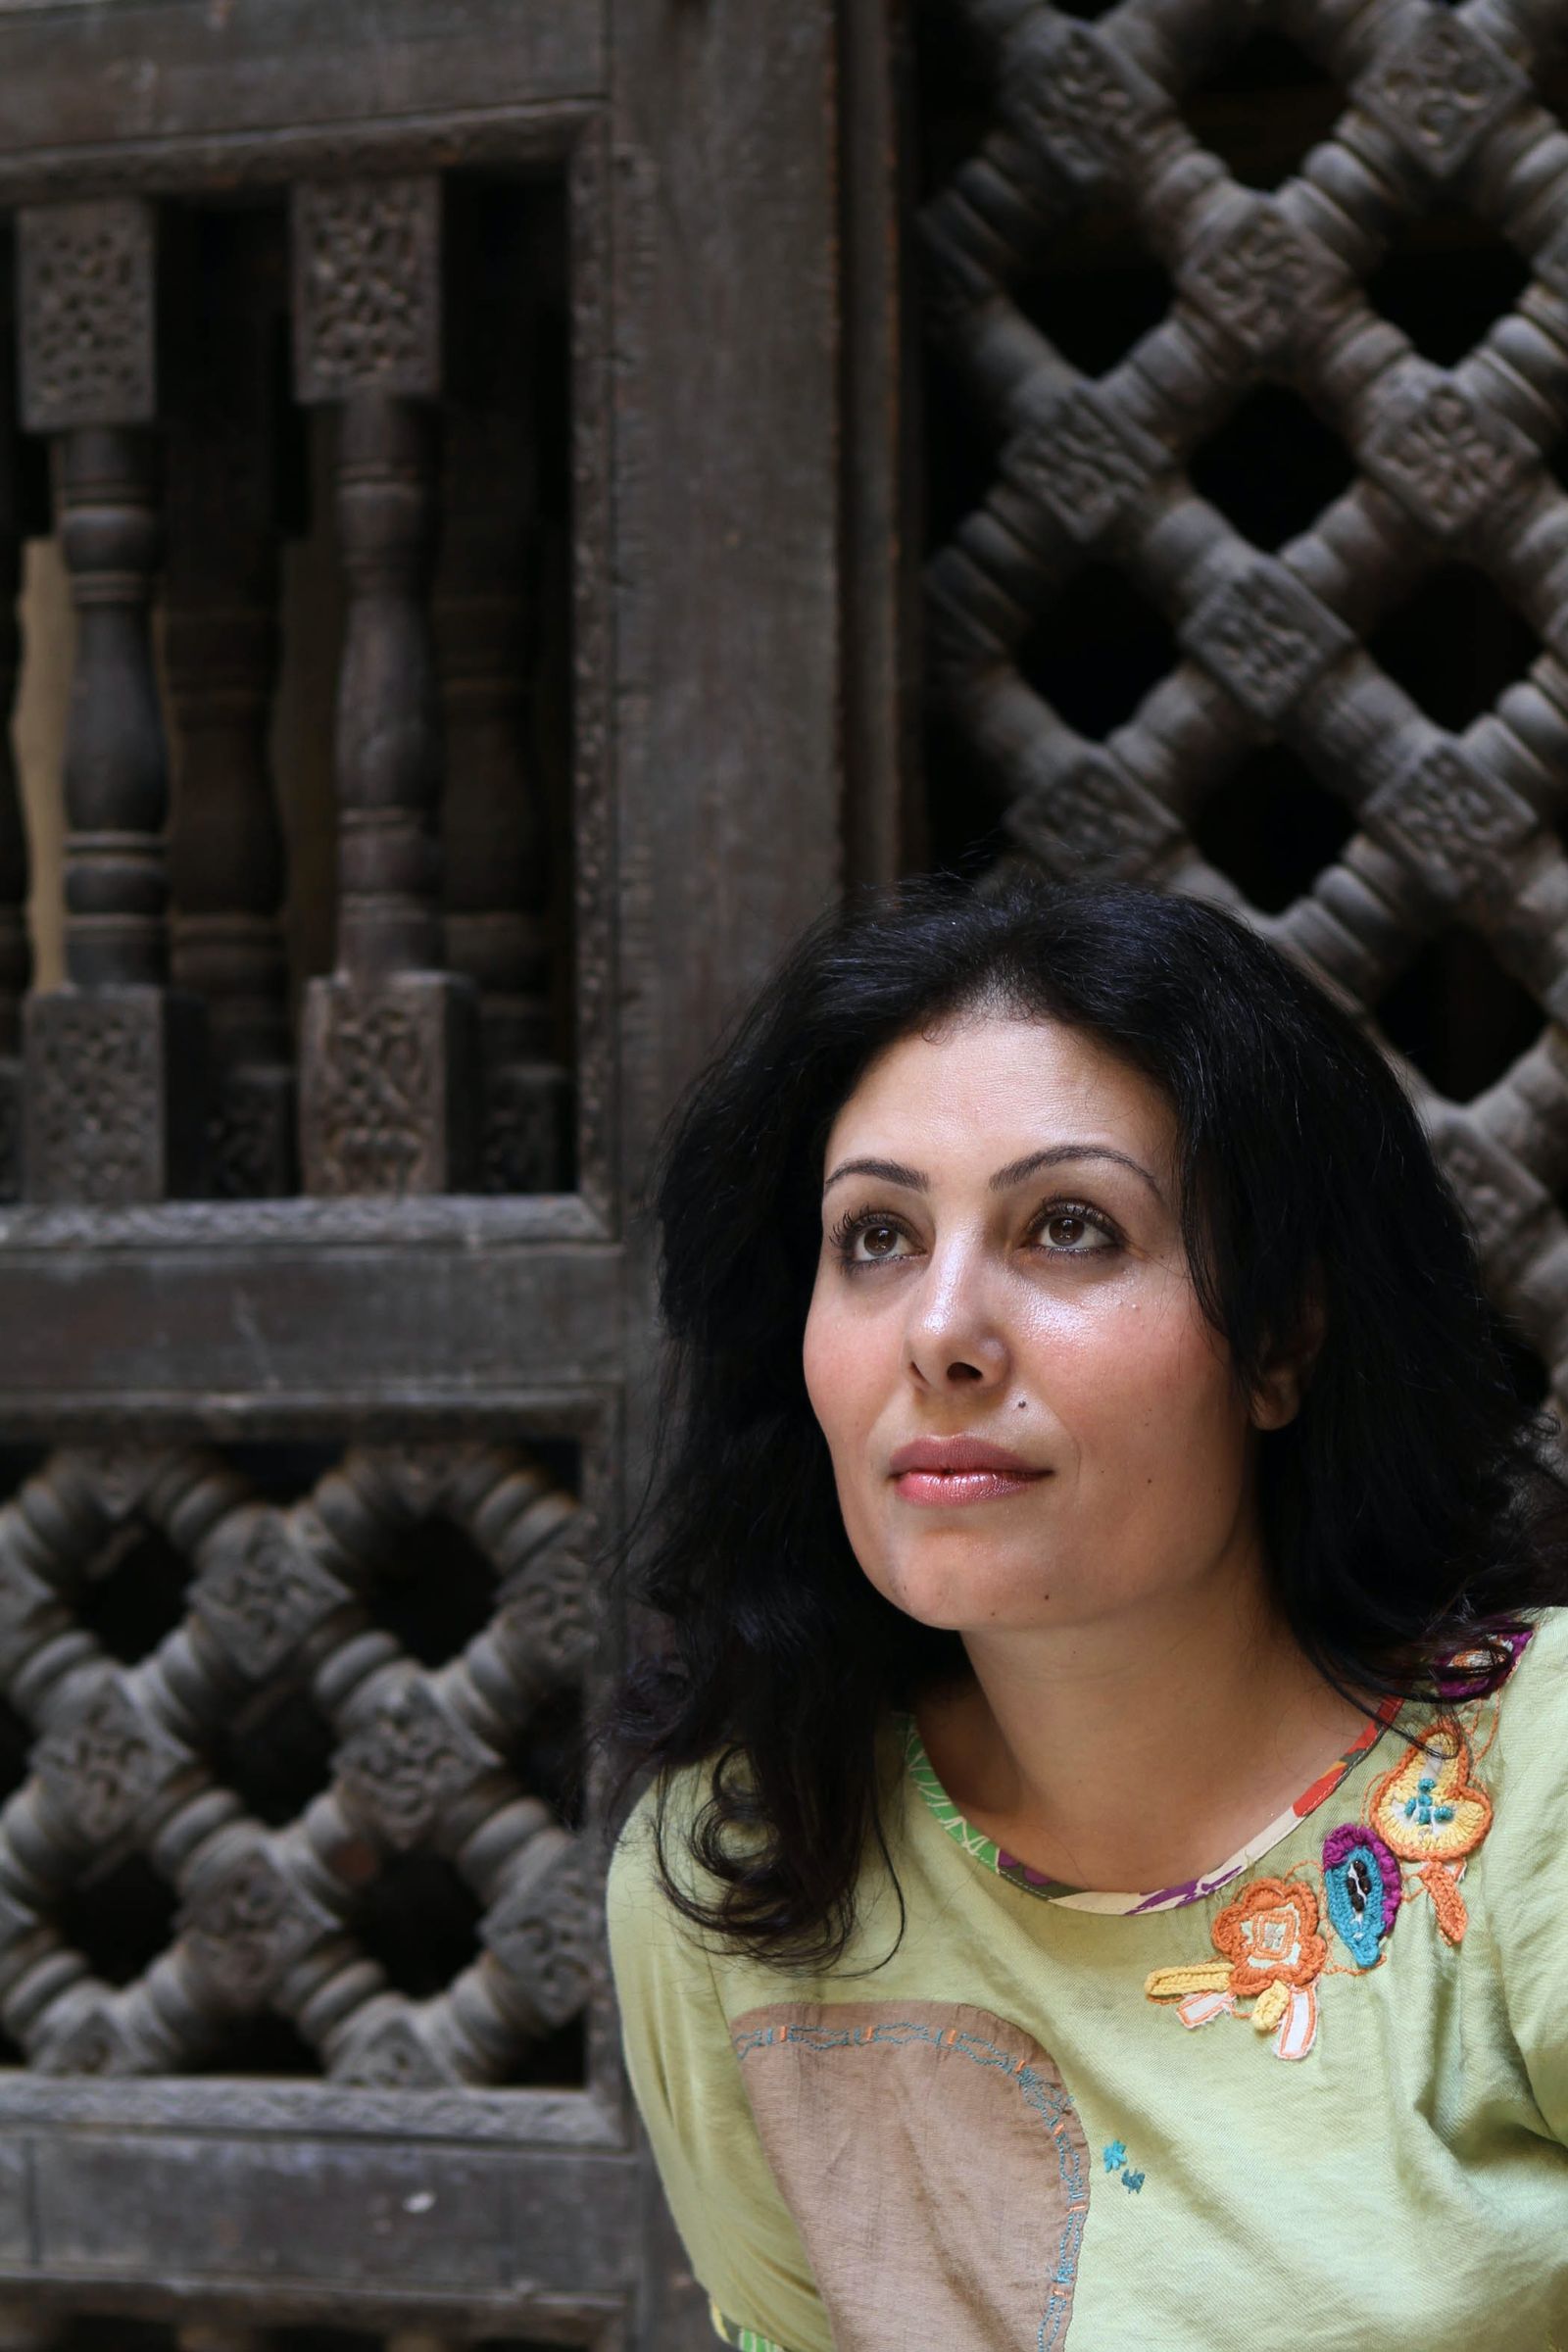 الروائية المصرية منصورة عز الدين - Randa Shaath